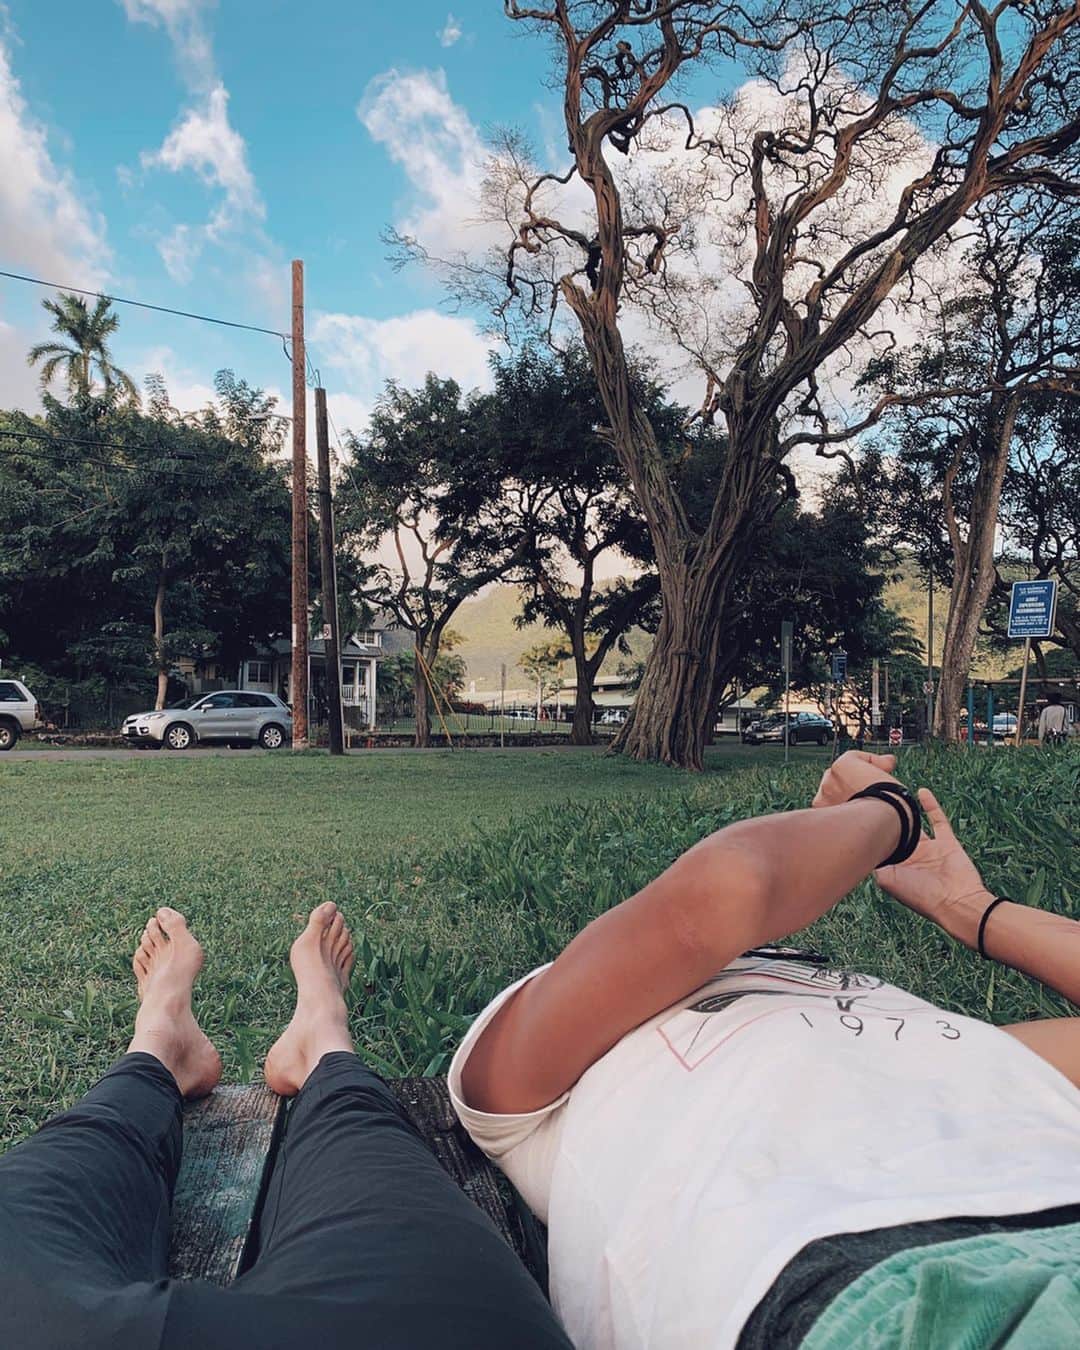 瀬畑茉有子さんのインスタグラム写真 - (瀬畑茉有子Instagram)「今回の旅の場所を決めるきっかけになったのはこの子🌳 . . 2018年の4月に仕事の撮影でハワイに行ったのがきっかけでこの樹に出逢った。 . . 仕事の合間の休みの日に観光場所から離れた山の中をランニングしていた時に大きな広場を見つけ、そこに存在していた一本の樹から色んな事を学ぶことになった。 . . 撮影が決まる半年前の2017年の冬はすごく心を閉ざしていた時期だった。 . . 簡単に言えば人との別れなんだけど、それは自分にとって大きな意味をもつ別れだった。 自信喪失、自己嫌悪、怒りや悲しみが交互に襲ってくるようなあまり幸せとは言えない日々だった。 . . ただその別れがきっかけで学んだことや得たことも沢山あった🌿 . . 人間の価値や人への想い . 物差しで測れないその人の持っている価値 . 自分自身で感じる事 . それを信じる事 .  仲間の優しさ . 人の醜さ美しさ . 苦しくて辛い分だけ色んな感じ方を味わえたそんな時期でもあった💫 . . それから半年後にこの樹に出逢うことになる。 . . その樹を見つけた瞬間一目散にその樹めがけてダッシュしたのを覚えてる💨 . . 樹の幹を両手を広げて抱きしめながら、その樹は私に大切な事を教えてくれた。 . . わたしは涙が止まらなく、なんで泣いているのかもわからなかったけど、そこから離れたくなくて、樹の下の小さなベンチに寝っ転がり日が落ちるまで眺めていた。 . . 携帯のWi-Fiが届かなかったので電波もないこの場所で4時間近く寝そべってたと思う🌳 . . すごく不思議な体験だったけど、彼女はとても大切な事を色々わたしに伝えてくれた。 . .  どっしりと構えていなさい。 あなた一人でどうにかしなくてはいけないという考えはやめなさい。周りには沢山の仲間がいます。人を信じ人に委ねてみなさい。 . 大きな太い幹と毛細血管のように細かくて繊細な枝達は同じ樹であるという事。 . .基礎であるところがしっかりと力強いから繊細で優しくて柔らかく風に揺れることができるのだろう🌿 . 一気に大きくなる事や成功する事よりも何が大切なのか時間をかけて感じ、そこにある全てのものに感謝しなさい。 . 辛い体験も楽しい体験も冷たい雨も温かな日差しも今目の前にある全ての体験があなたのものでありあなたしか体験できないということ。 . だからジャッジするのではなく全ての出来事を受け入れること。 .  この場に立っているだけの彼女なのに、 それは私に色んな体験をさせてくれた。 . . その時に教えてもらった事のお陰で私はさらに幸せの選択をさせてもらえている。 . . 今回も不思議とこの樹に近づくと涙が出てきた。 私の体の細胞がすごく喜んでいるのがわかる🍃💓 . . あの時はありがとうございました😌🙏🏻 って言えることが出来て本当に良かった。 . . そして相方と一緒にこの樹に再会できたのもすごく嬉しかった🥰 . . 次は会えるのはいつだろう🌿 . . . #hawaii #bigtree #naturelovers #thankyou #miracletree #travelphotography #park #garden #oahu  #自然体が一番美しい #今年はさらにリアルだけの自分でいよう #thankyouhawaii #running #detox #love #一寸先は光だと自分で思えれば光になる　#自分の人生を自分で選択して創る生き方　#物の捉え方　#感じ方　#観ようとしたい世界を変えただけ」1月14日 13時25分 - sehatamayuko